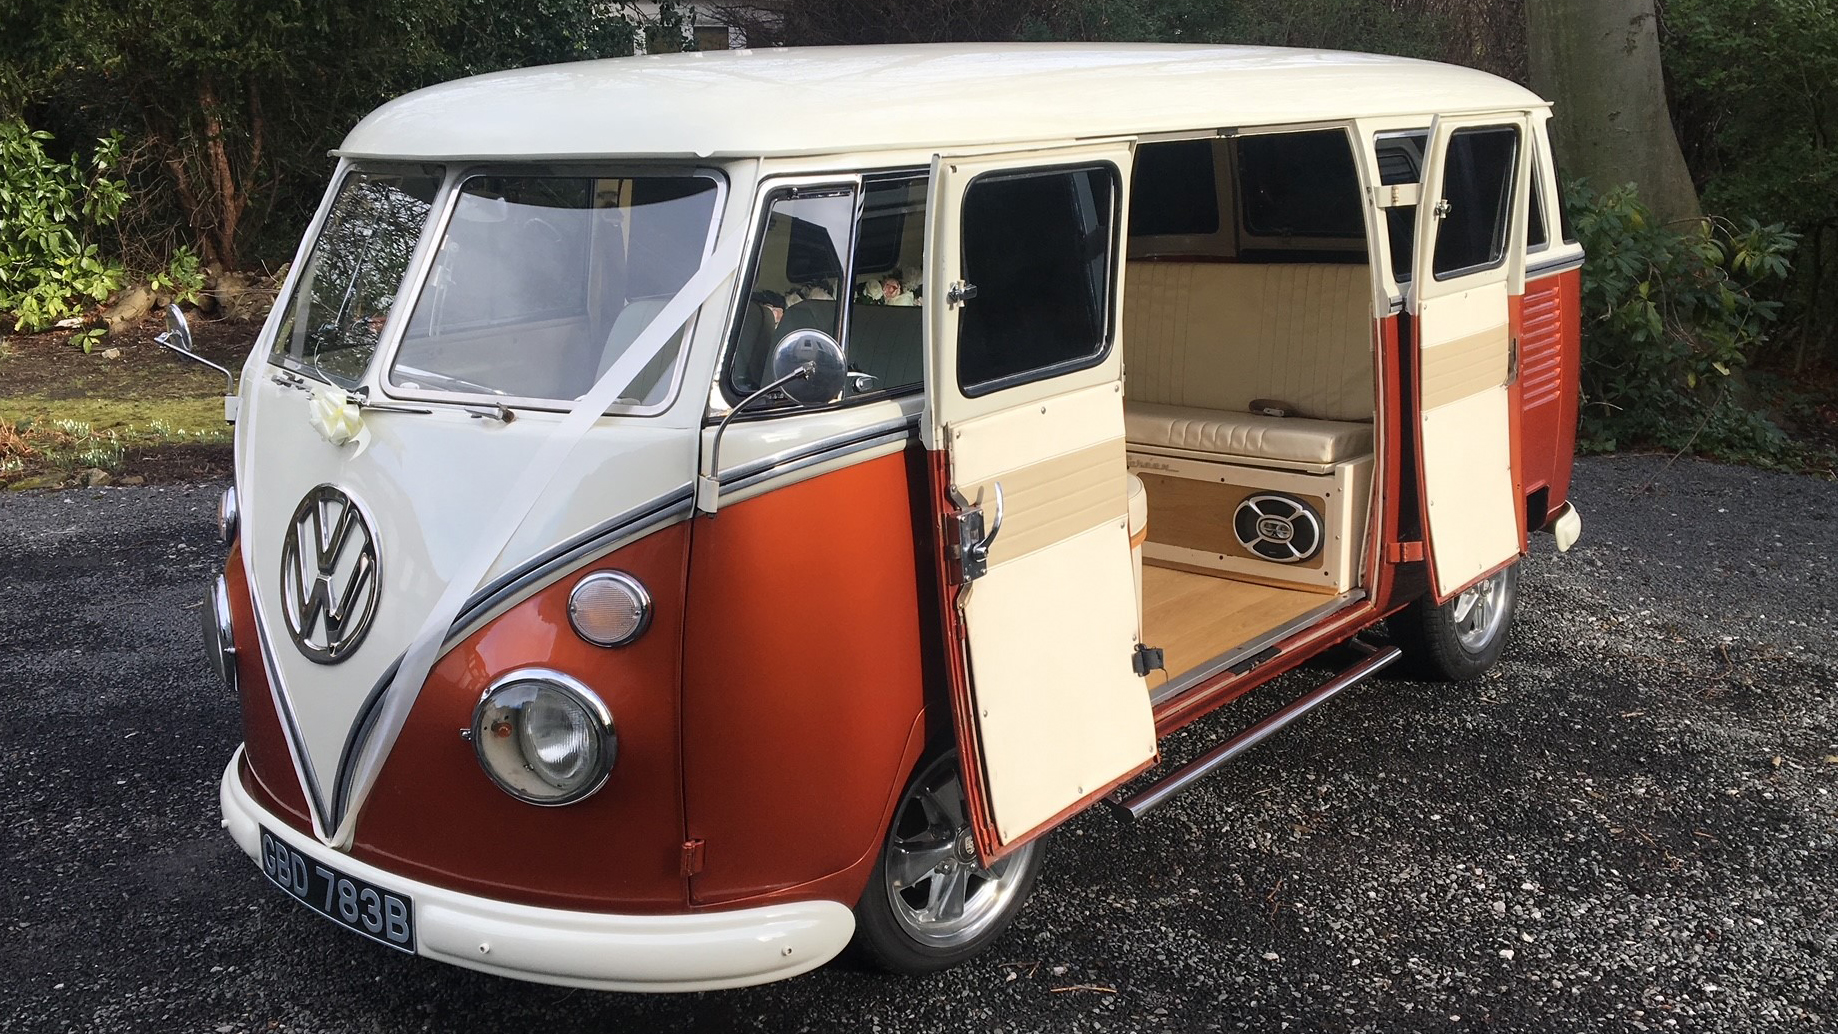 Volkswagen Split Screen Campervan wedding car for hire in Newcastle upon Tyne